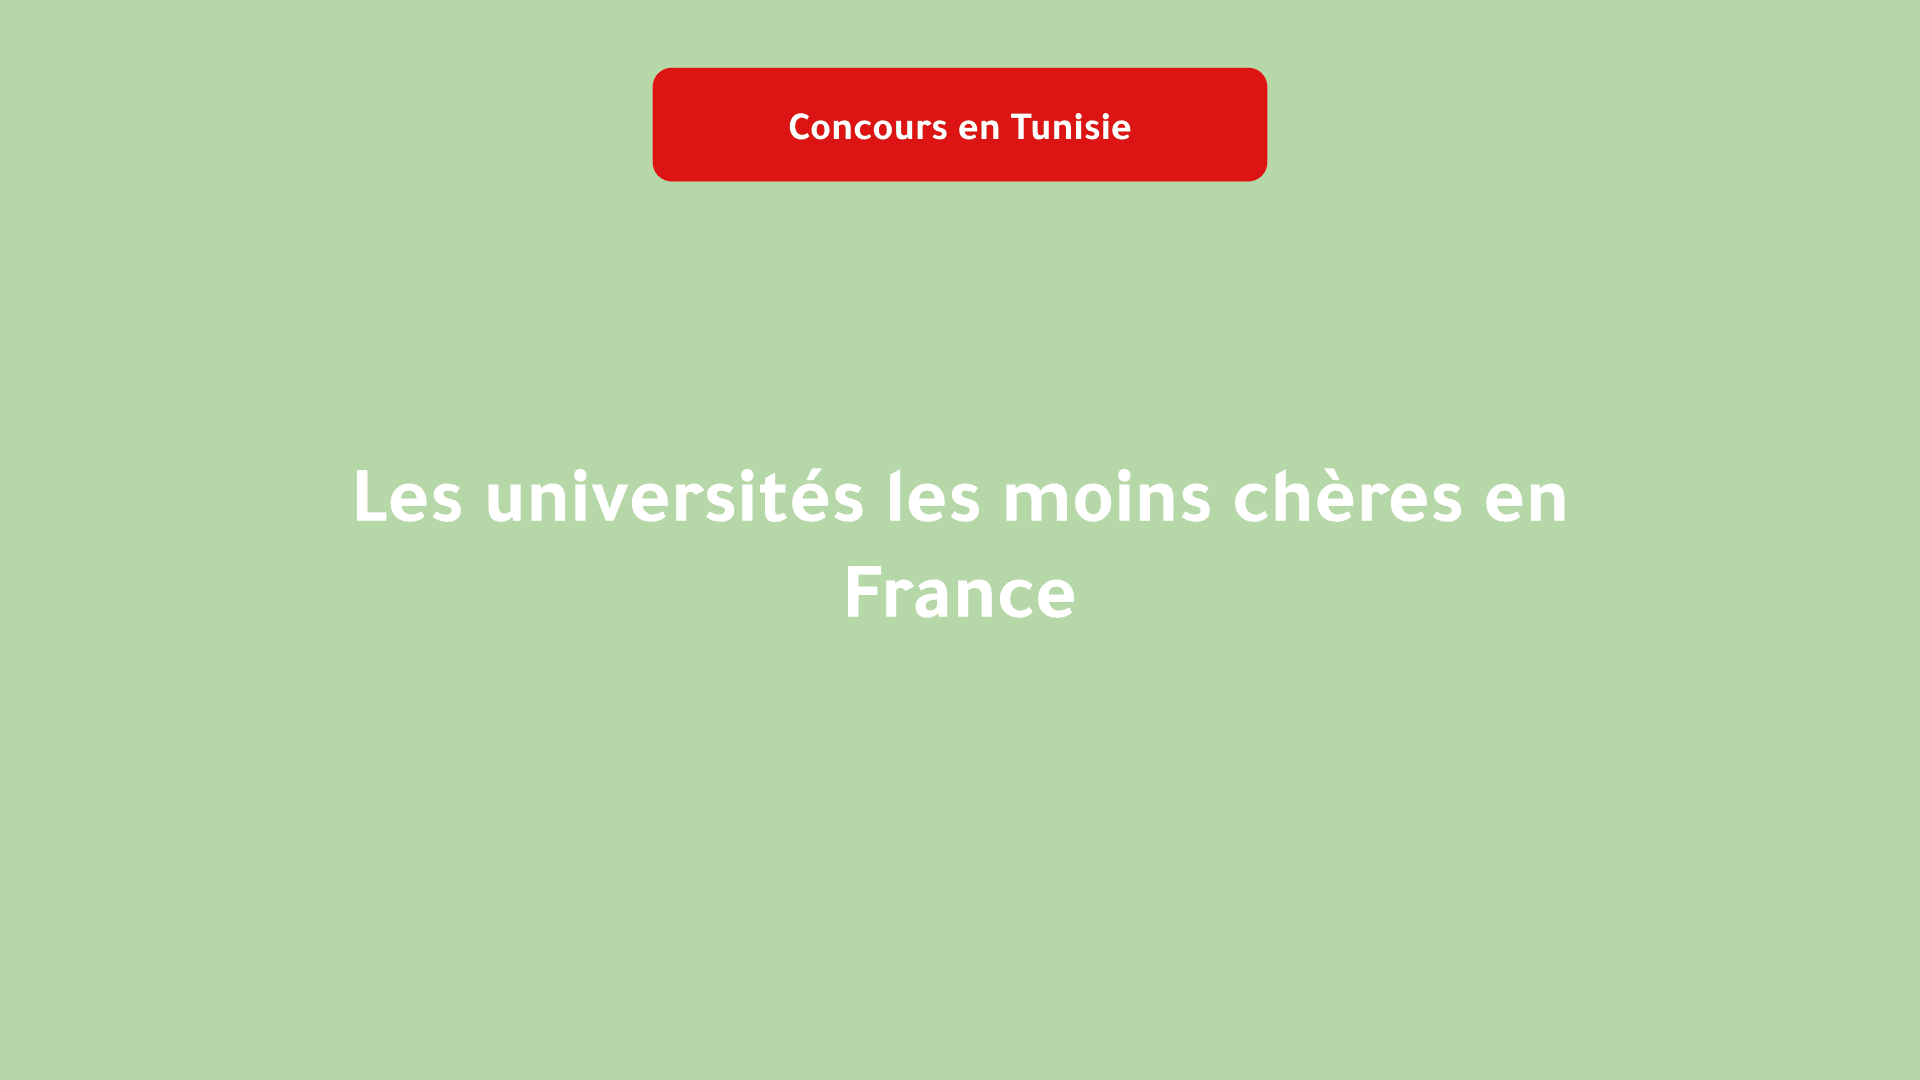 Les universités les moins chères en France